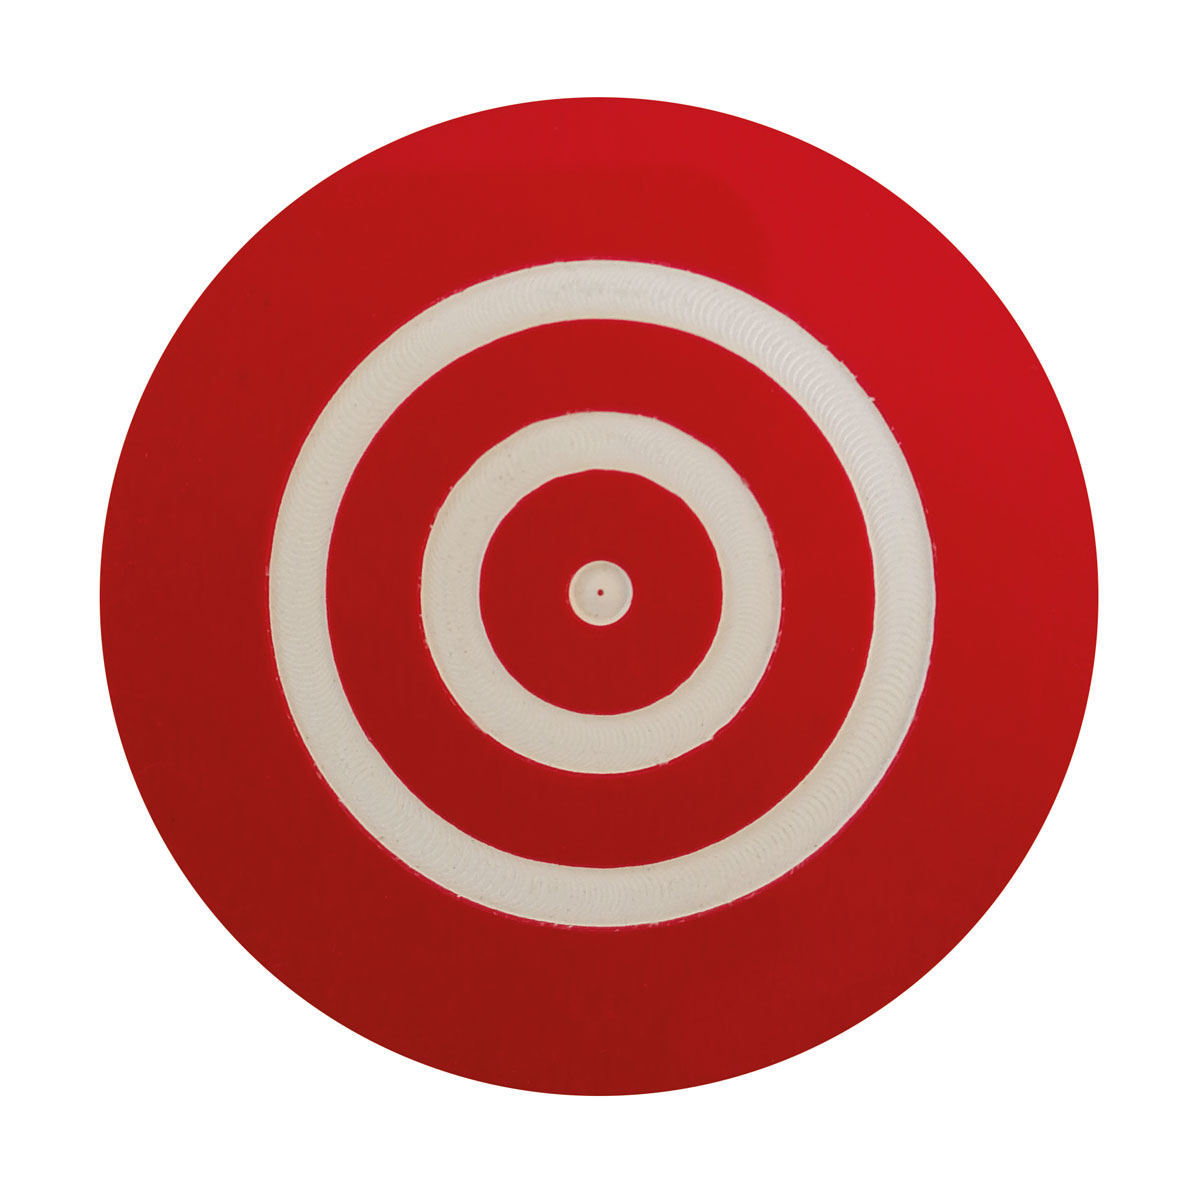 Zielmarke aus Kunststoff rot/weiß konzentrische Kreise Ø 60 mm lose